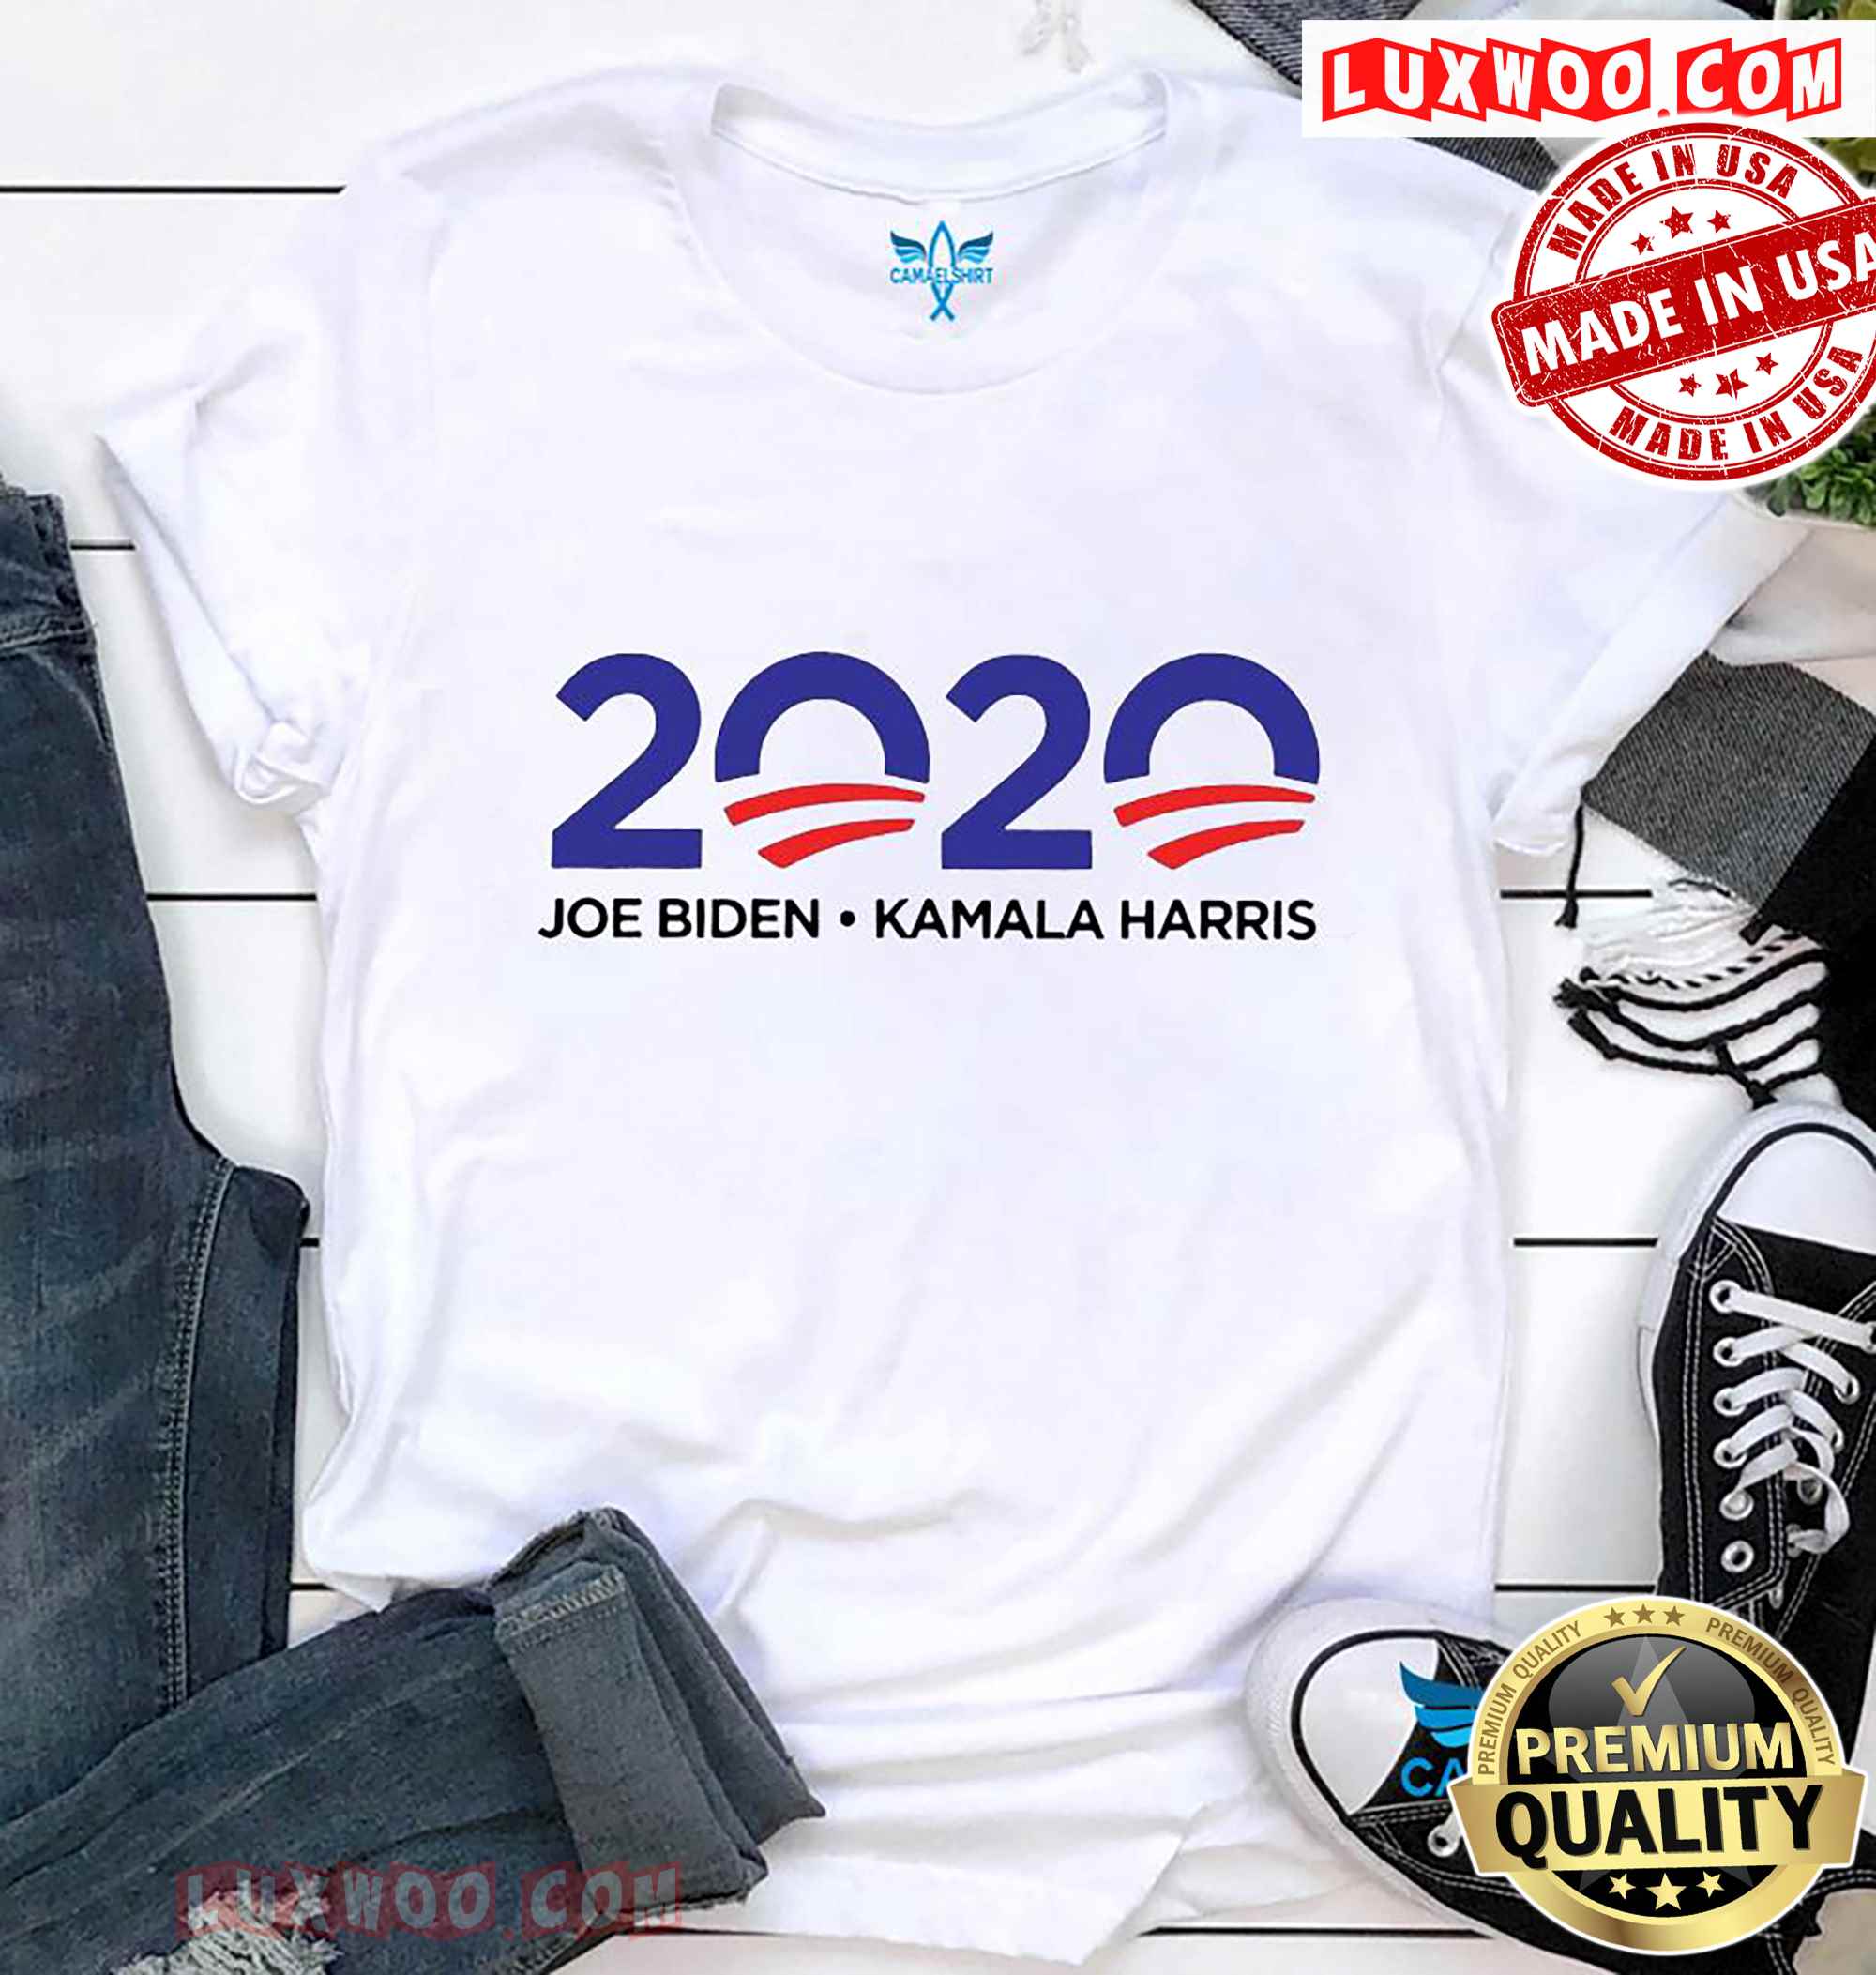 2020 Joe Biden Kamala Harris T-shirt